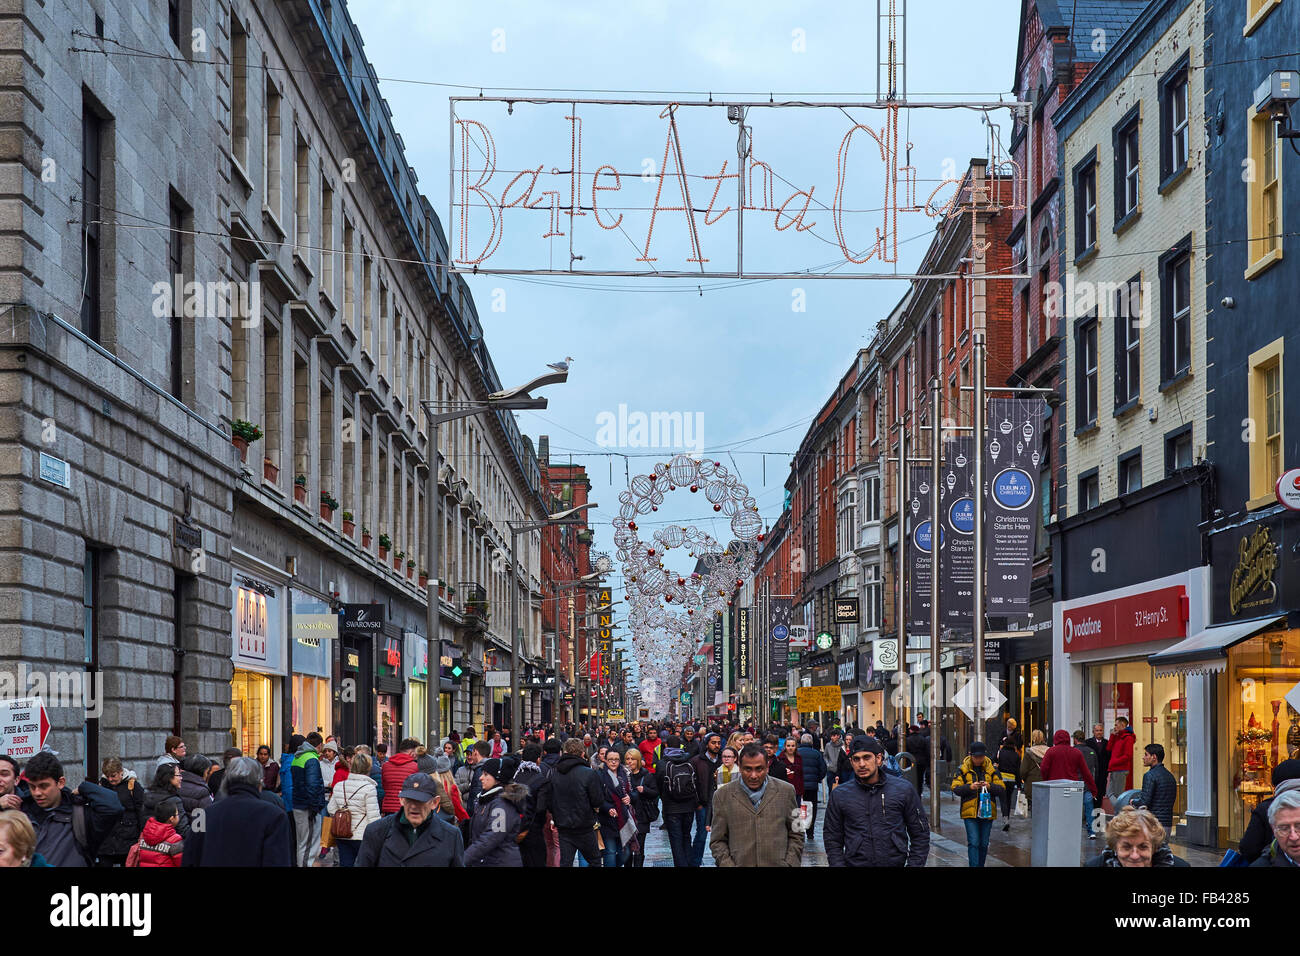 Dublín, Irlanda - Enero 05: Henri concurrida calle llena de peatones  después de la lluvia. El cartel dice 'Baile Atha Cliath', Irish Ce  Fotografía de stock - Alamy